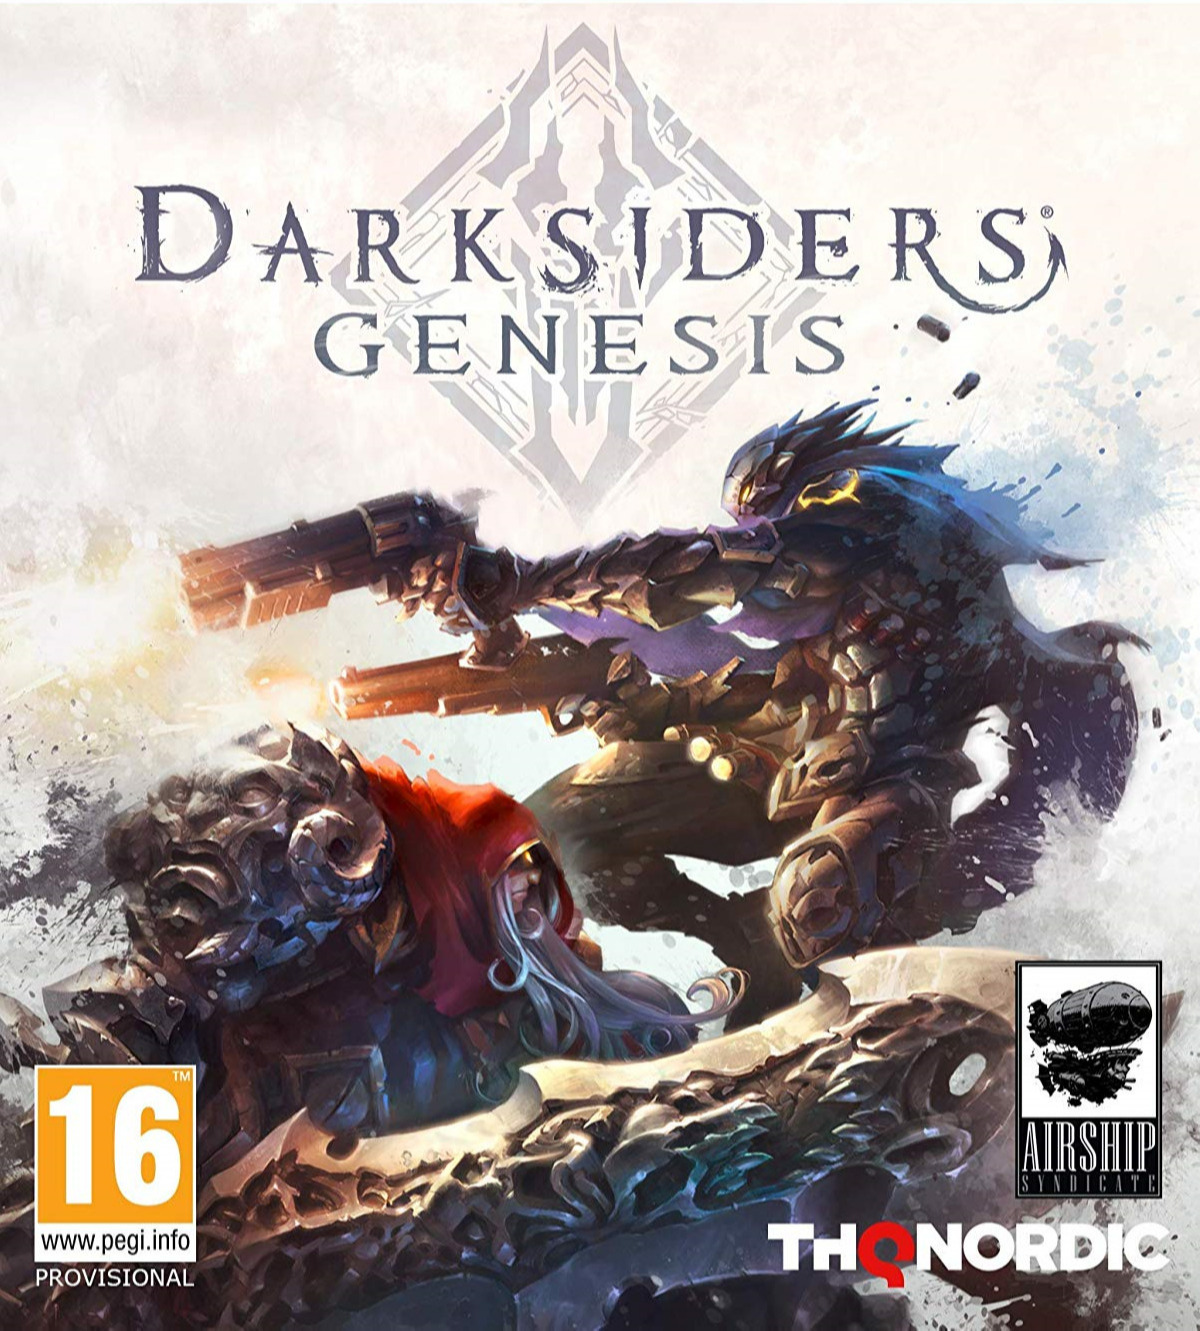 Darksiders: Genesis